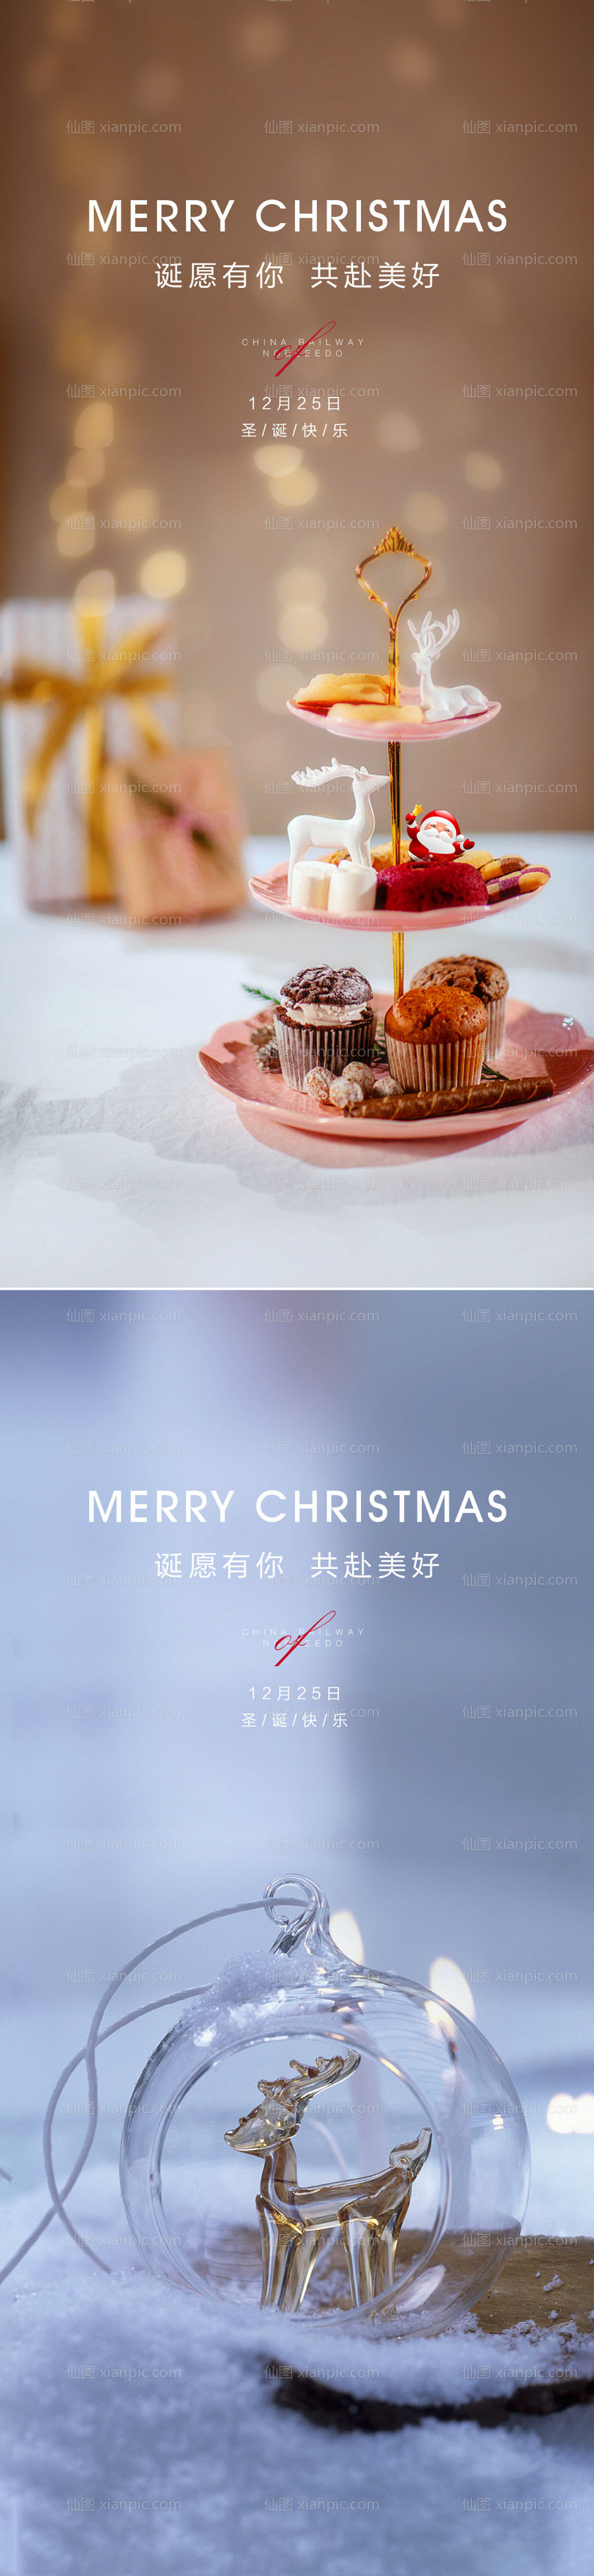 素材乐-圣诞节微信移动端海报